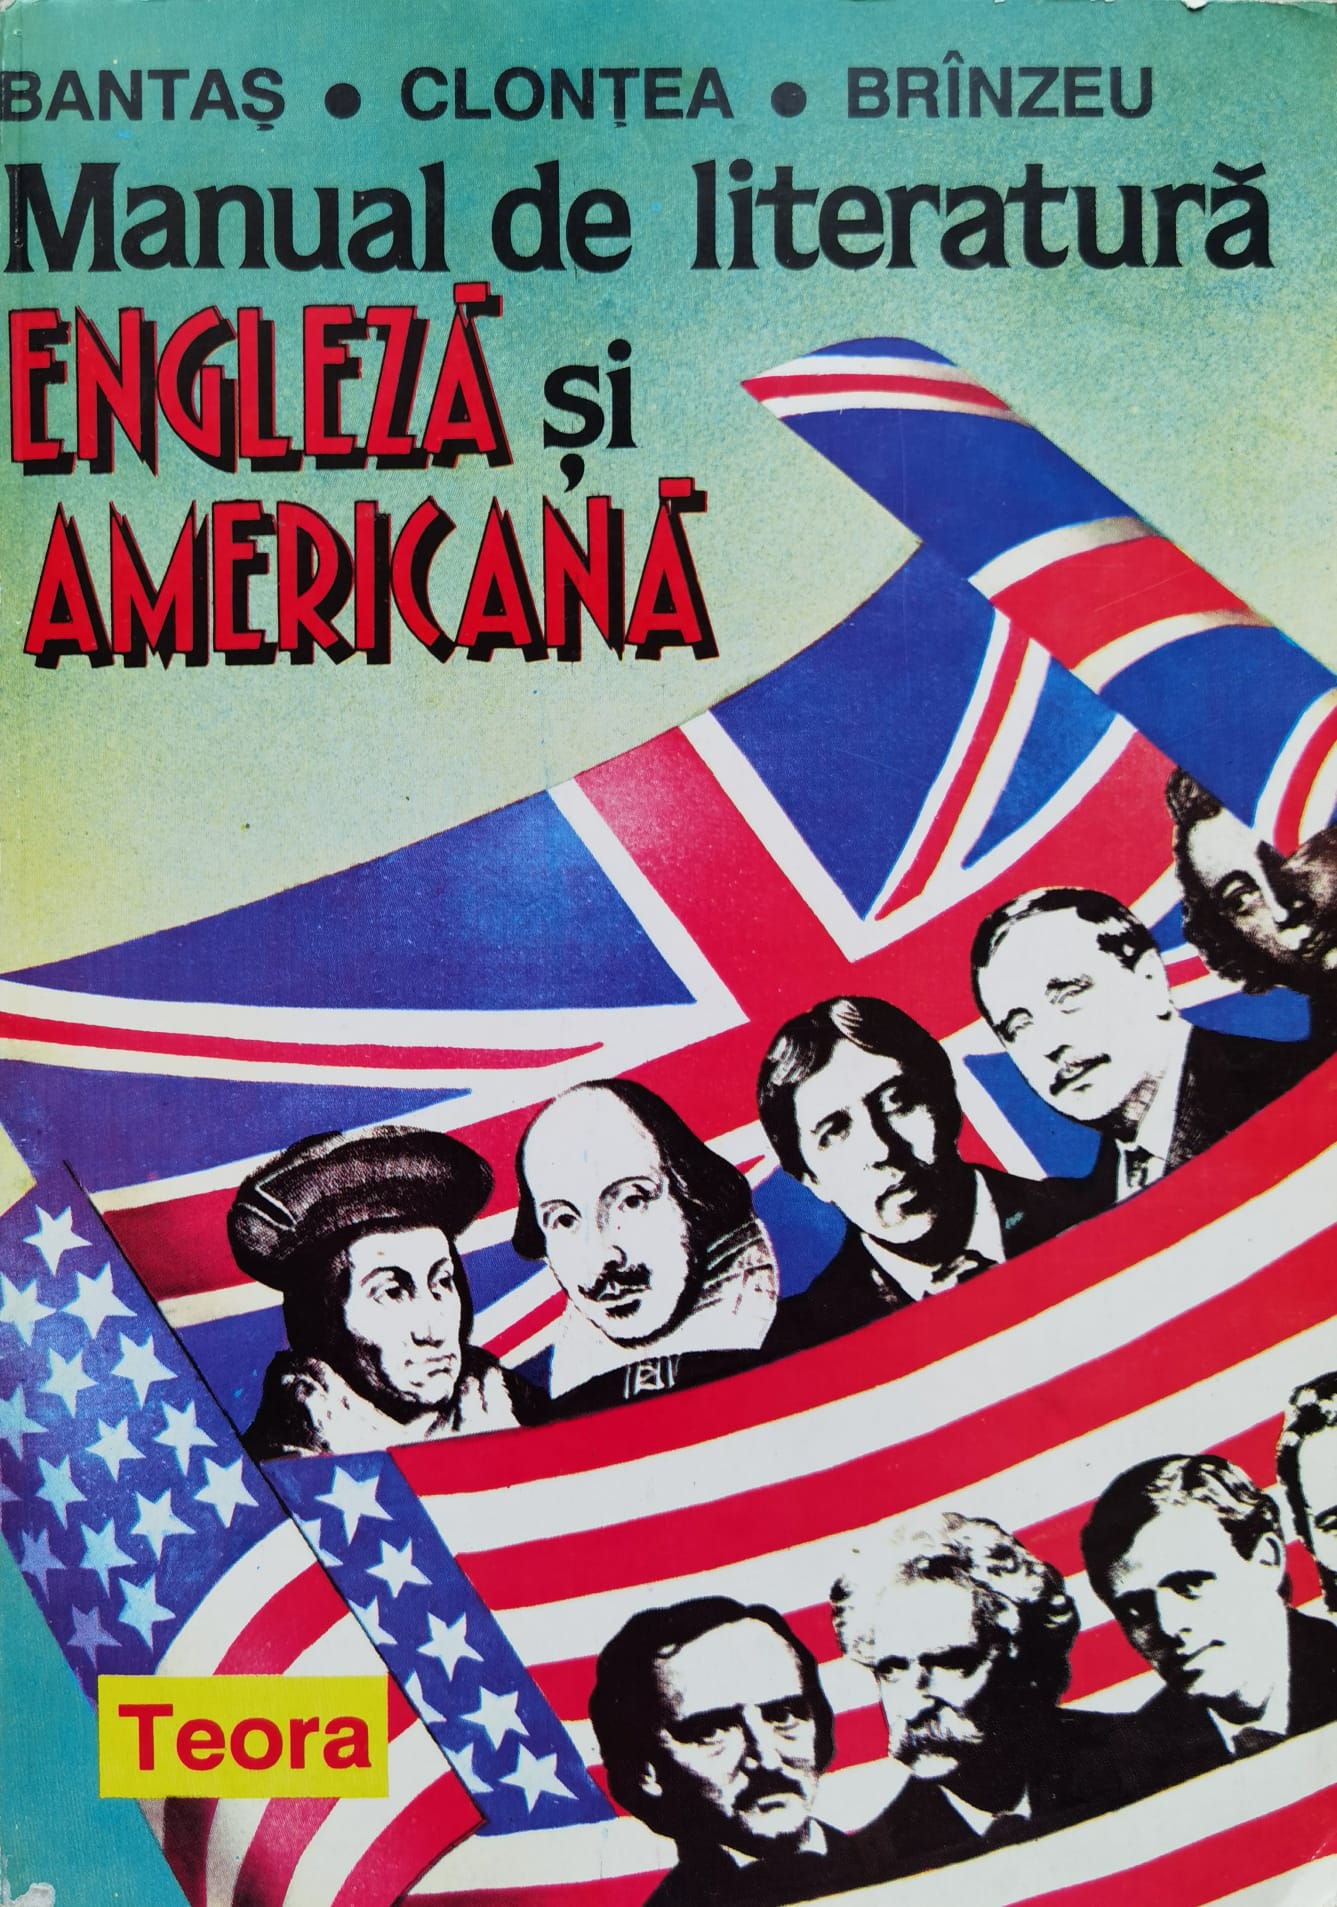 manual de literatura engleza si americana                                                            bantas clontea branzeu                                                                              